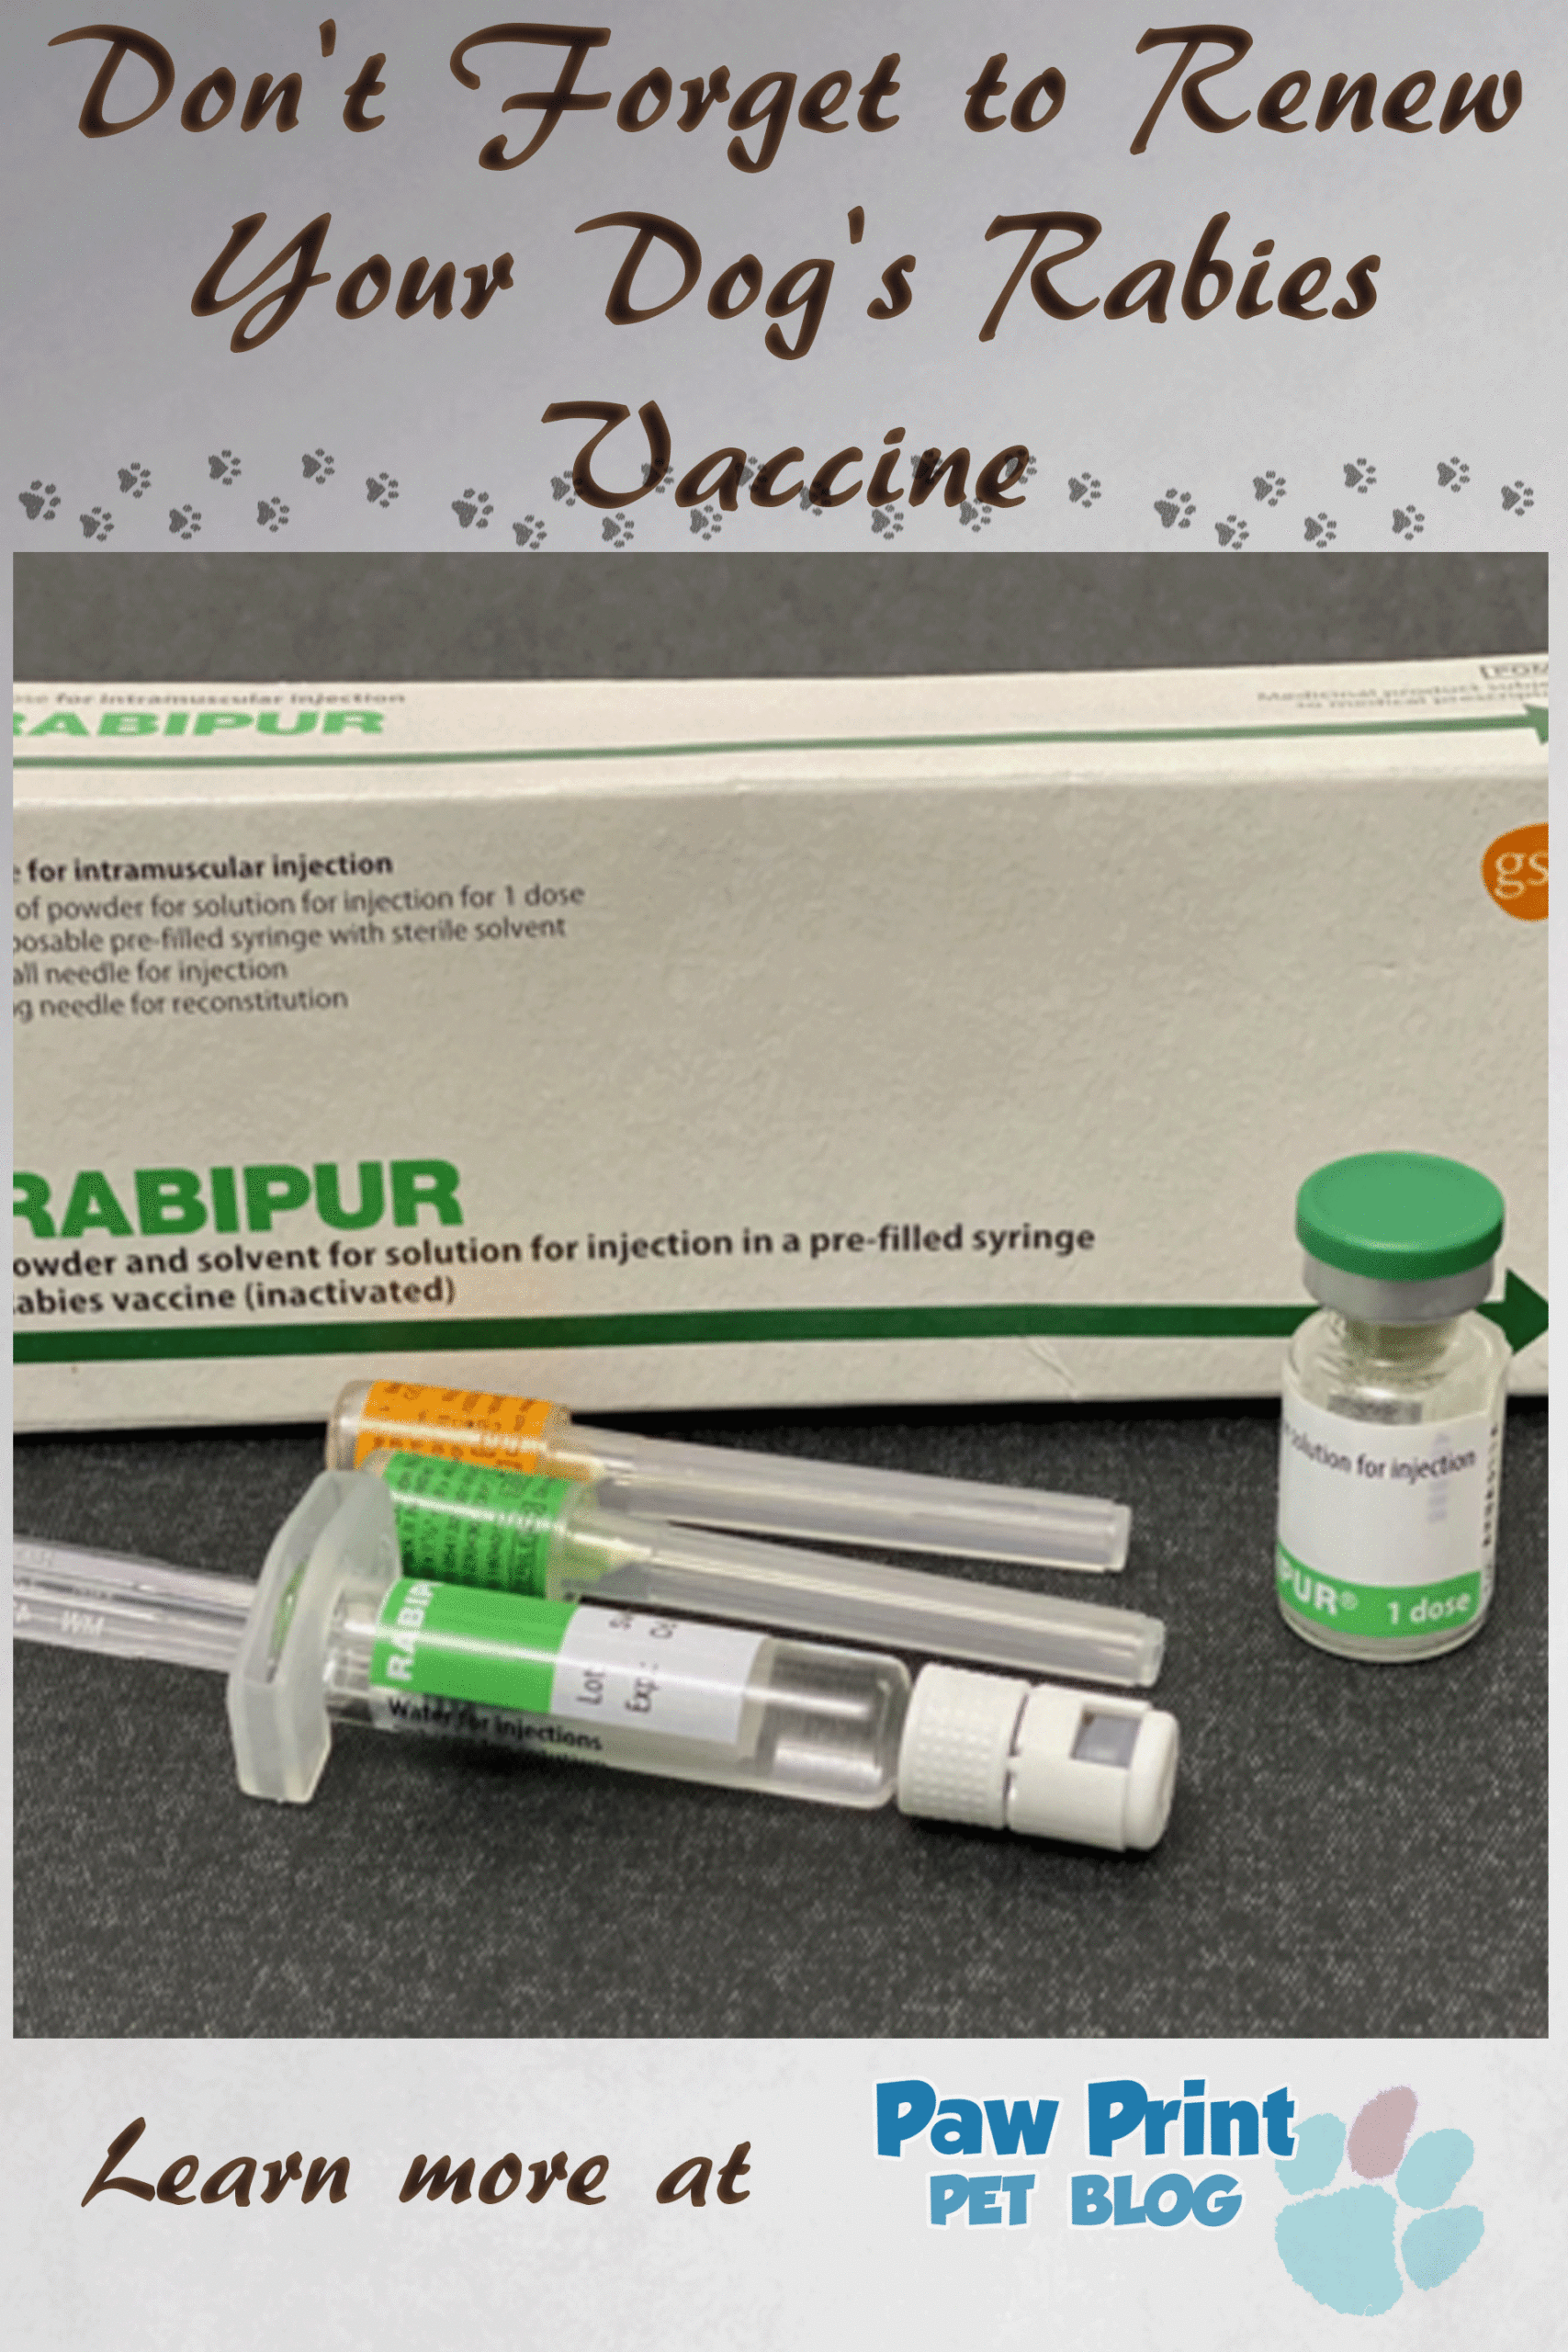 Dog rabies vaccine